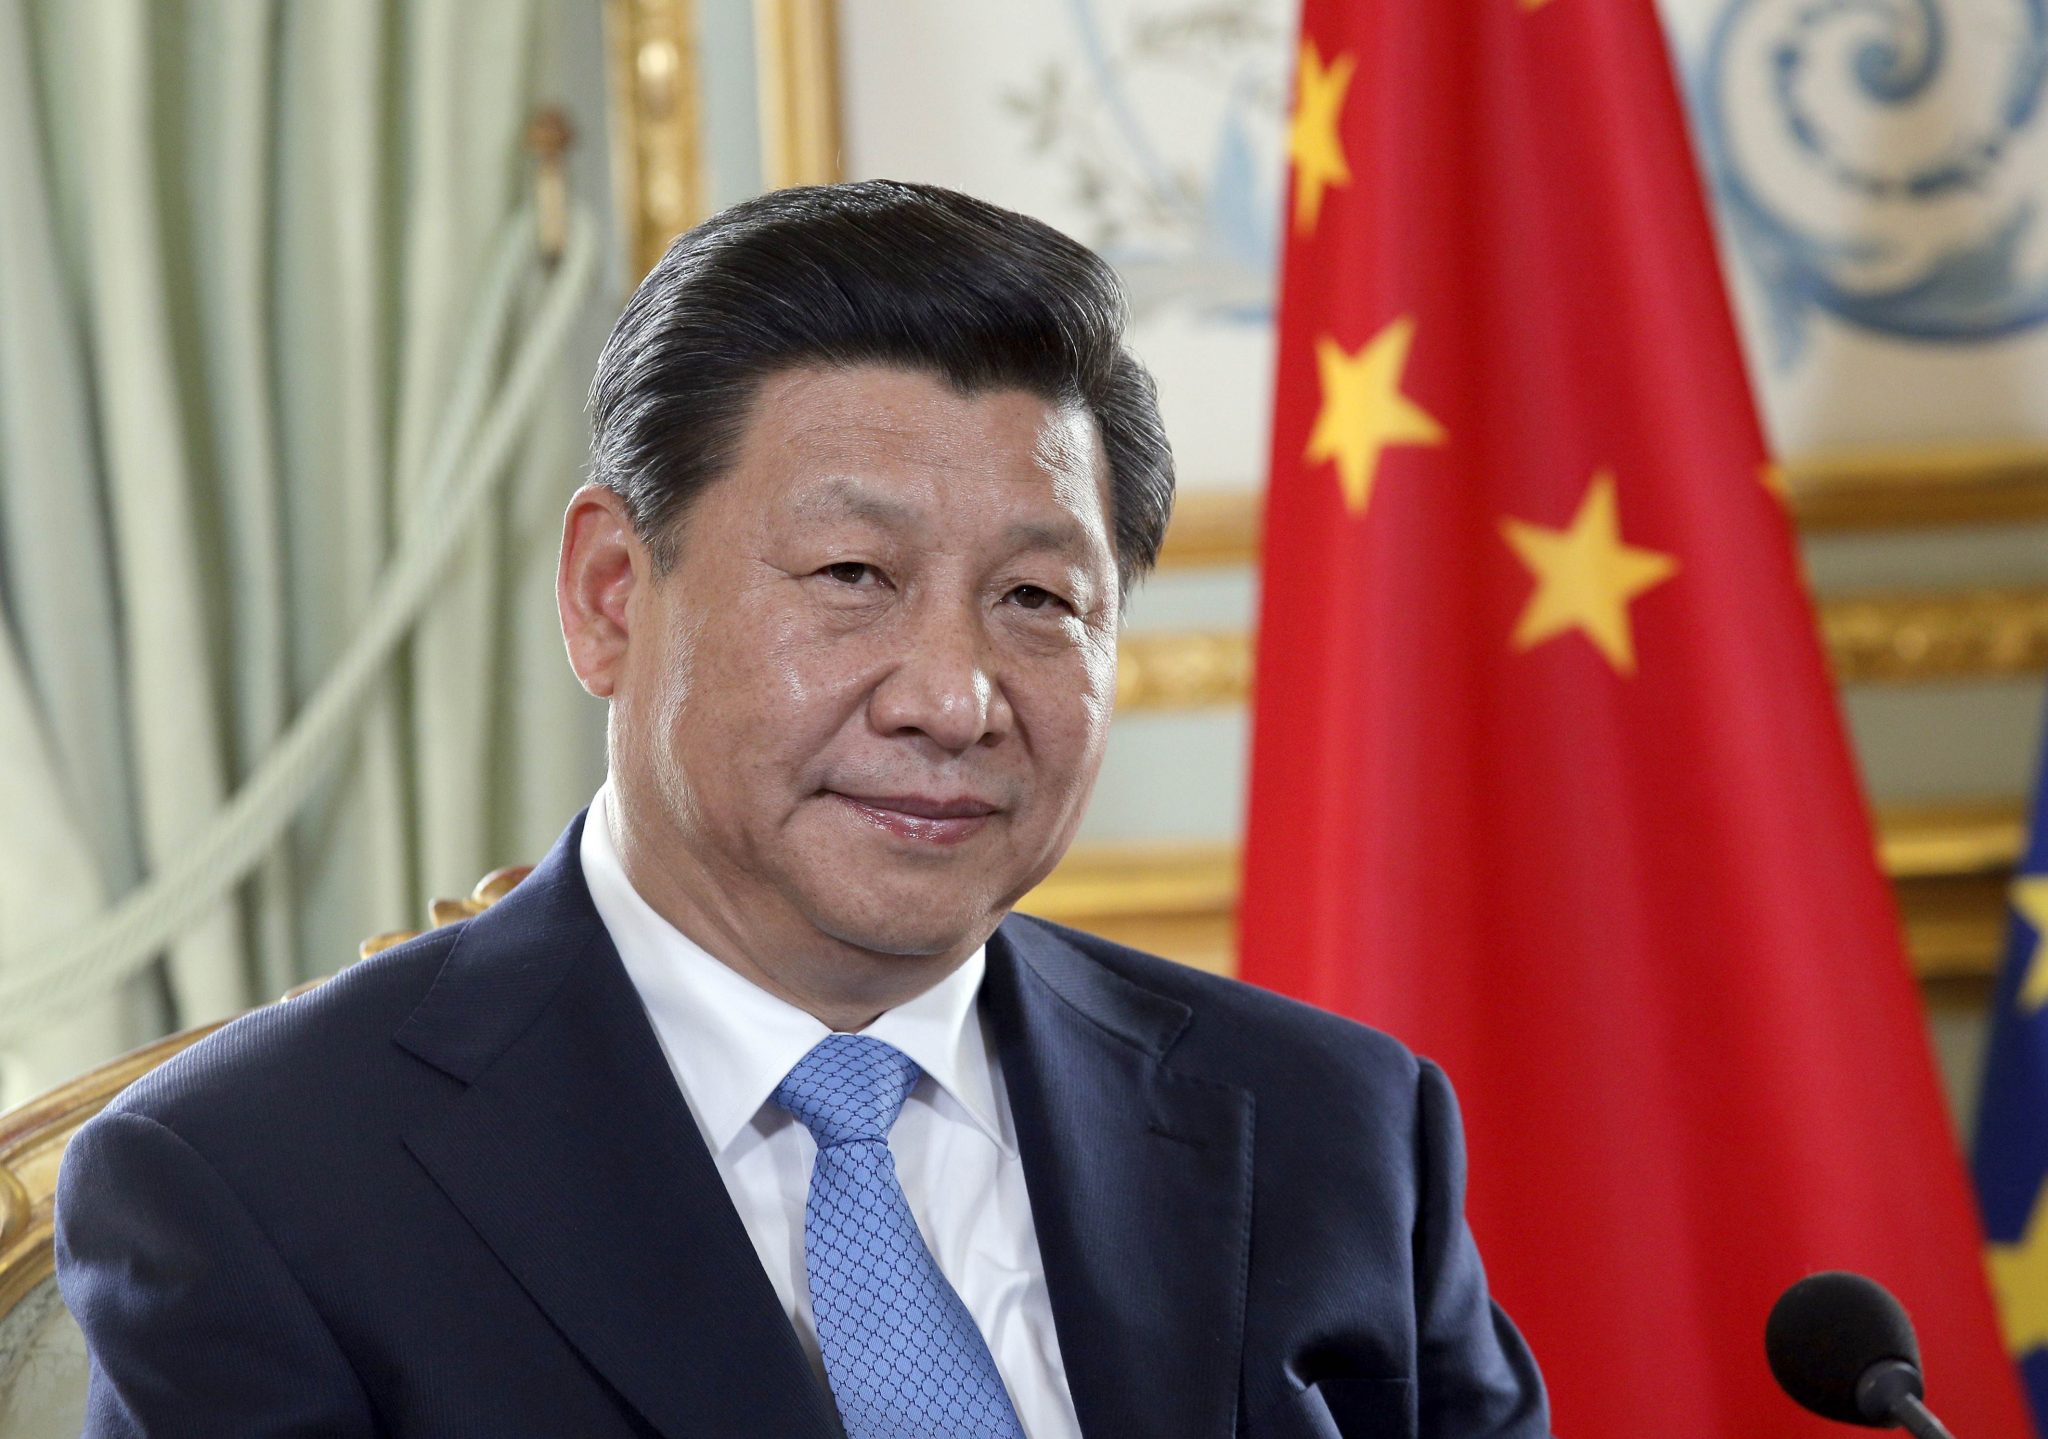 Κίνα: Ομόφωνη επανεκλογή Σι Τζινπίνγκ στον Προεδρικό θώκο